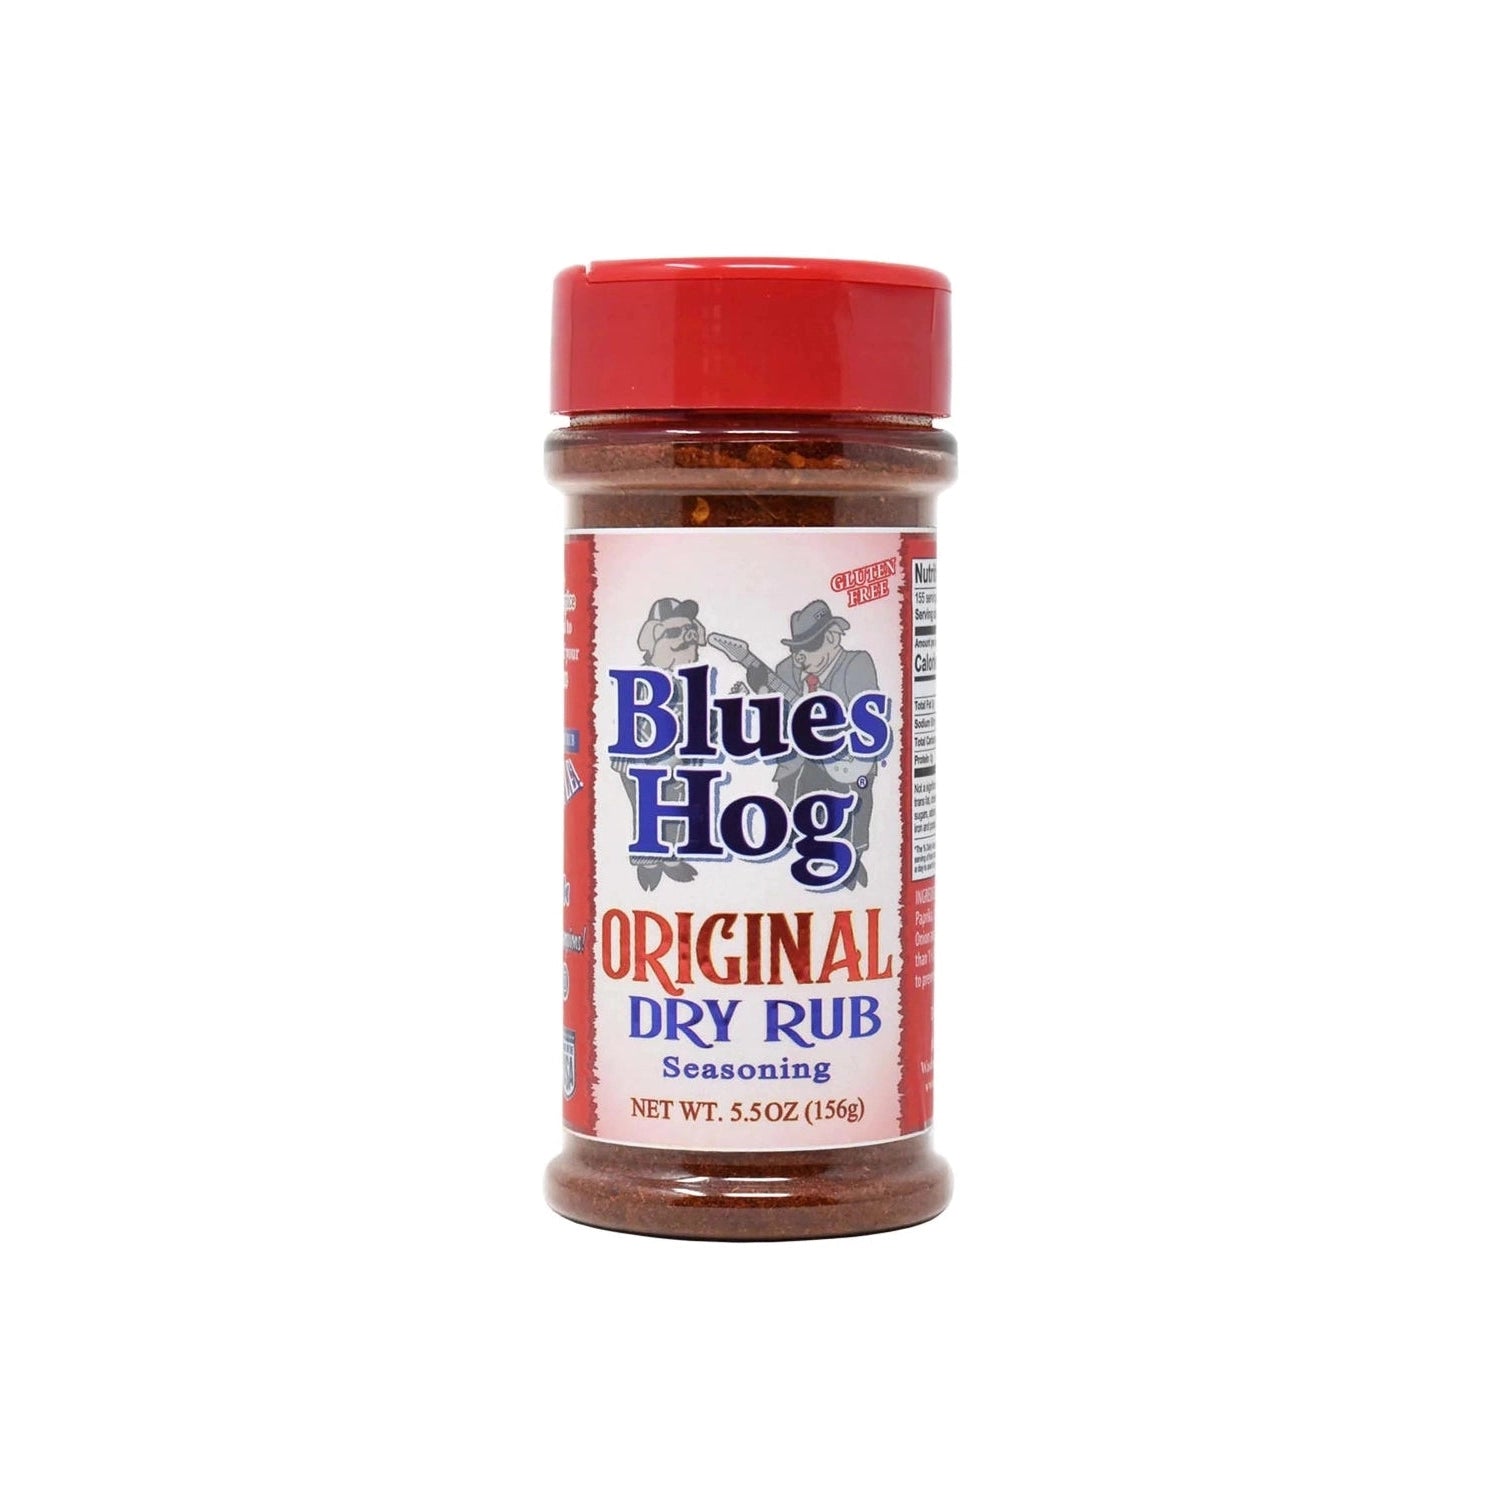 BLUES HOG Original Dry Rub Seasoning Blues Hog Chilliwack BBQ Supply